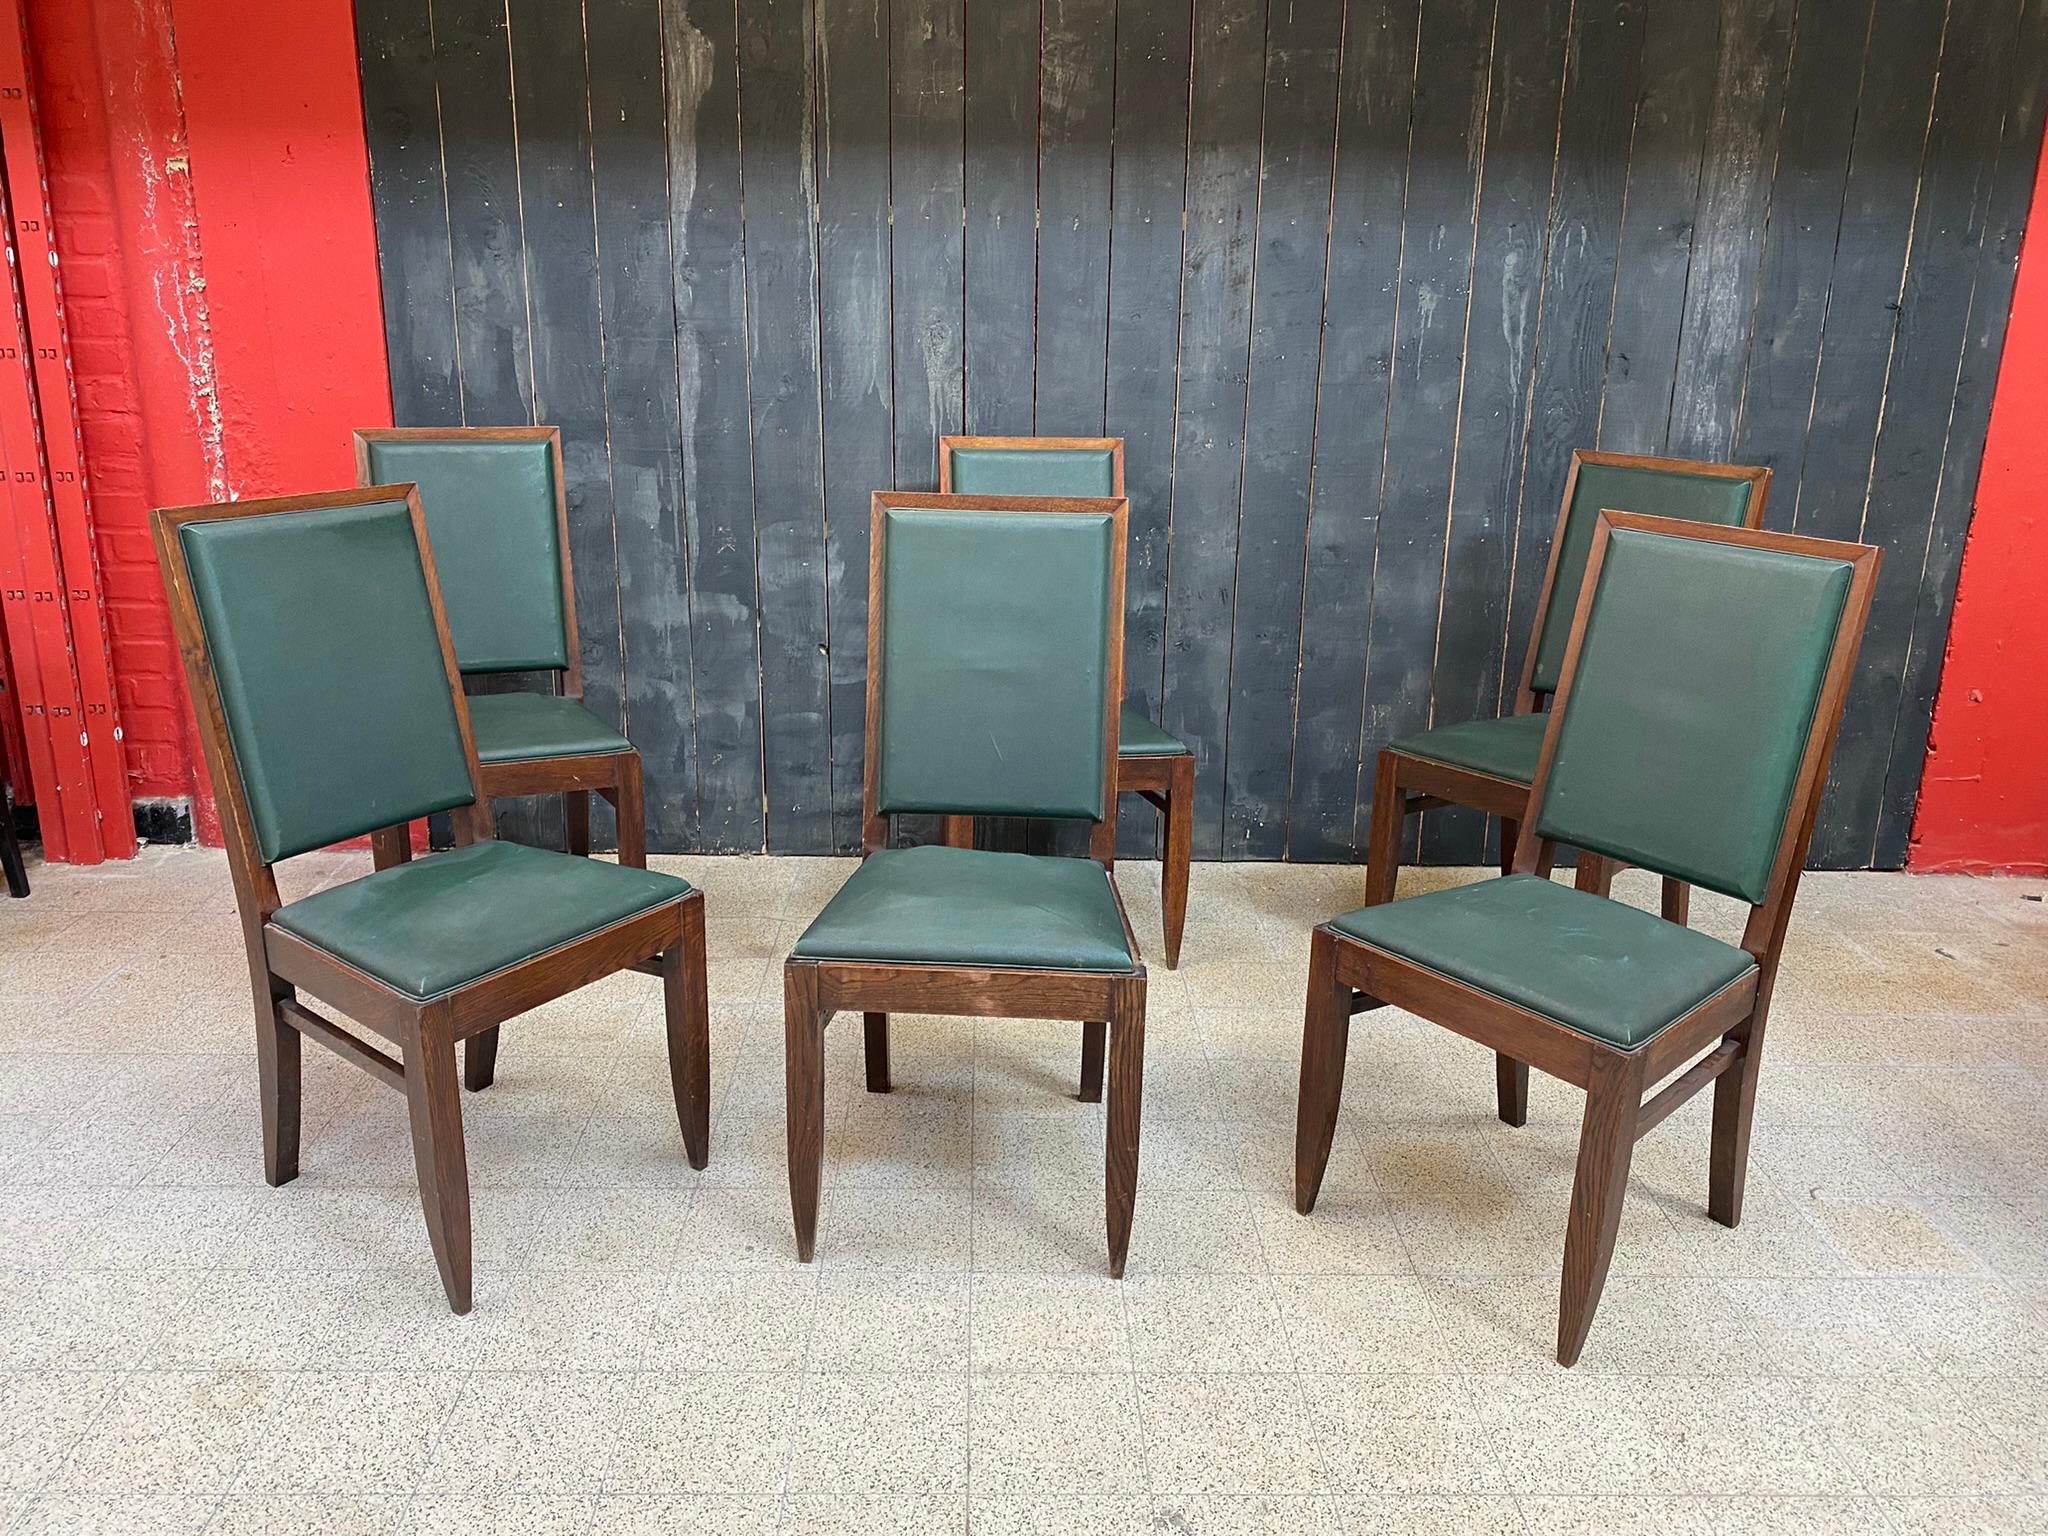 Gaston Poisson, ensemble de six chaises Art Déco en chêne vers 1930/1940
le revêtement doit être changé.